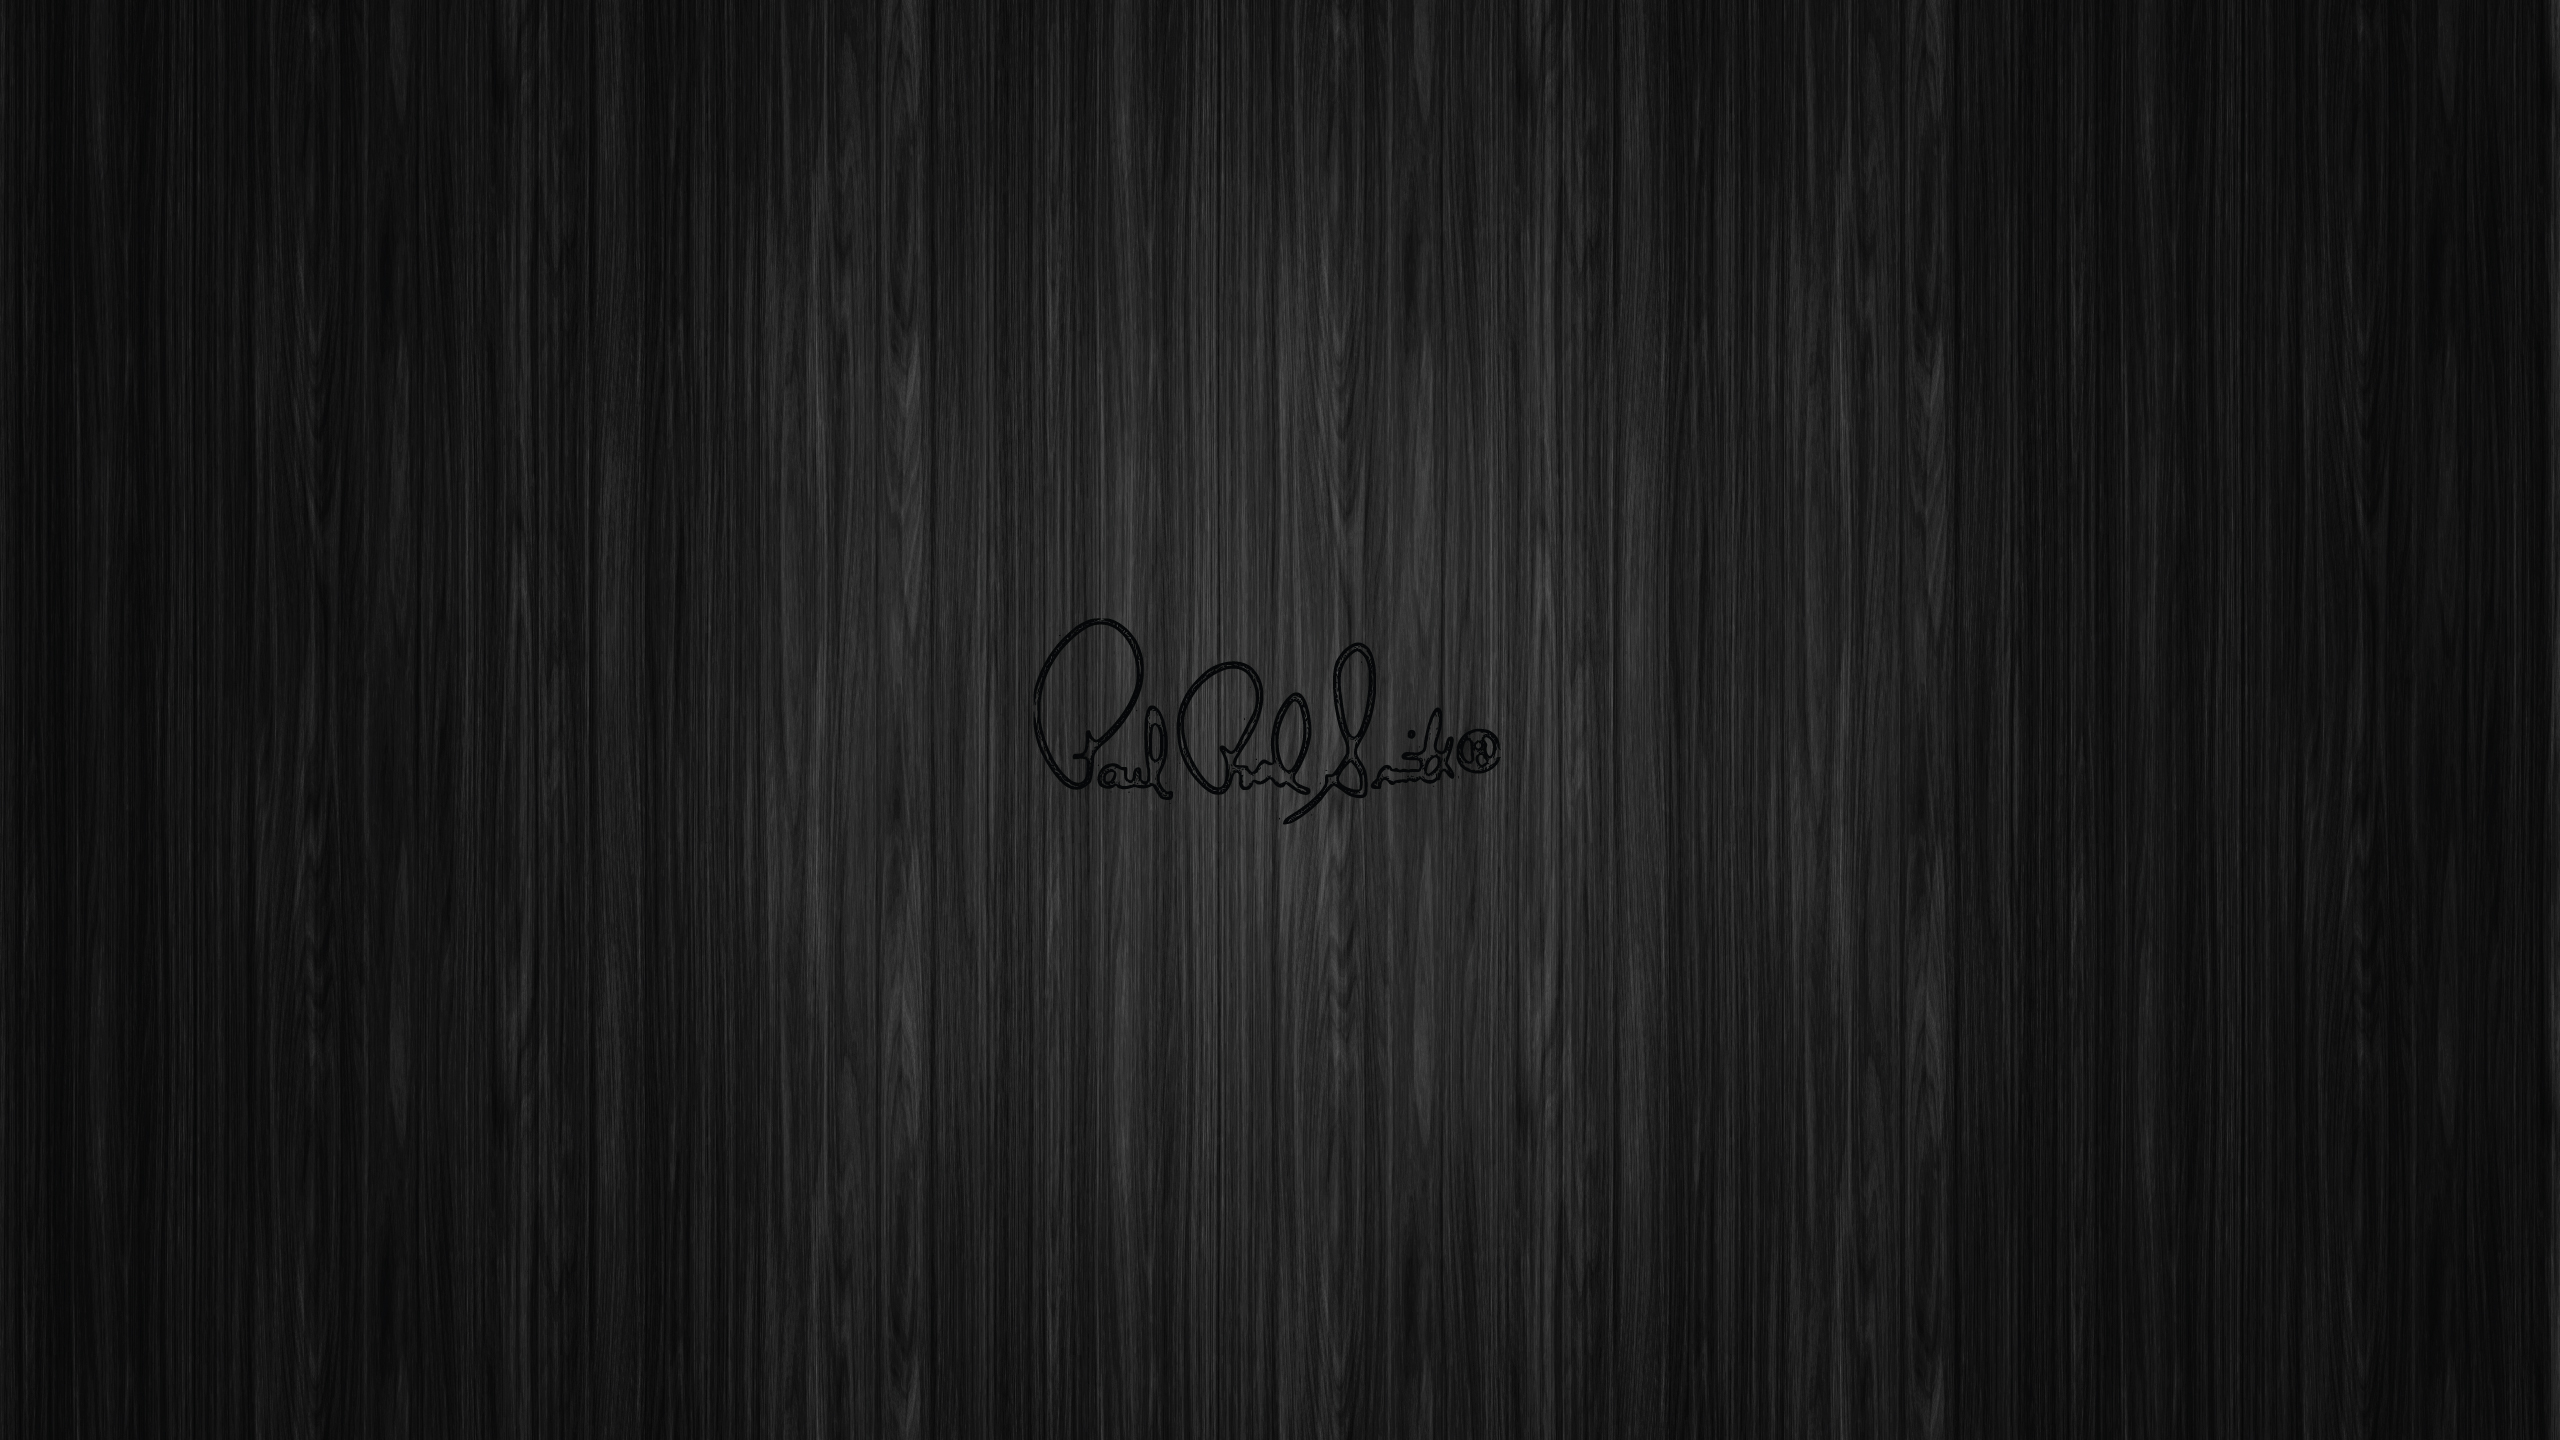 prs-logo-wallpaper-black.jpeg